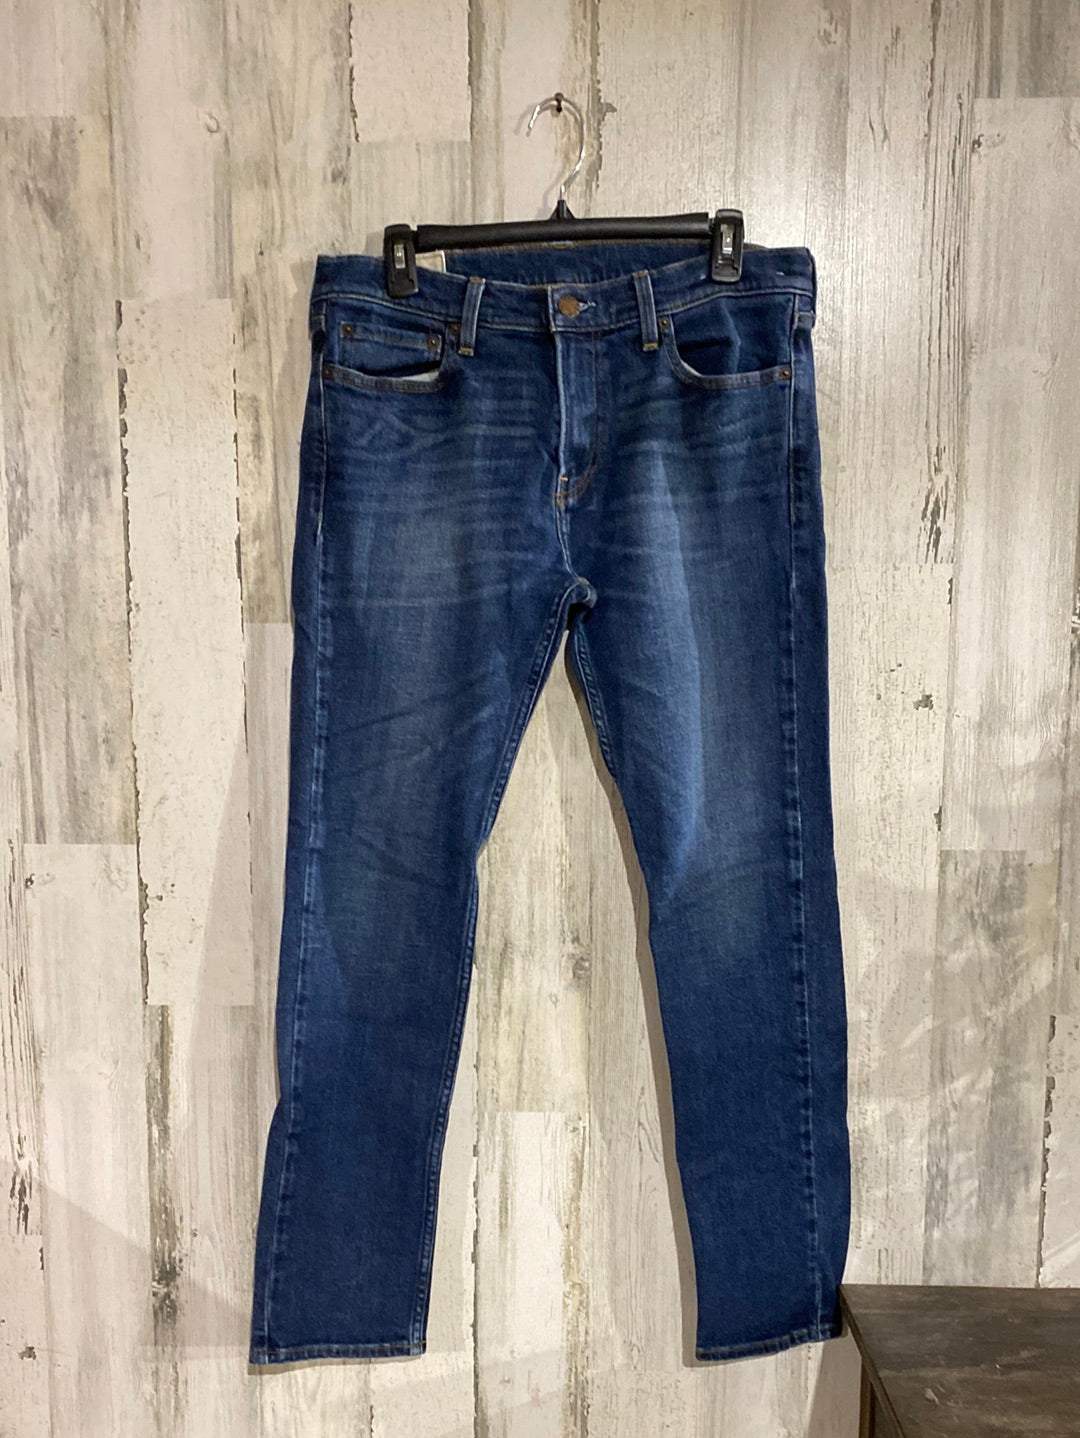 Men's Hollister Jeans 32x30